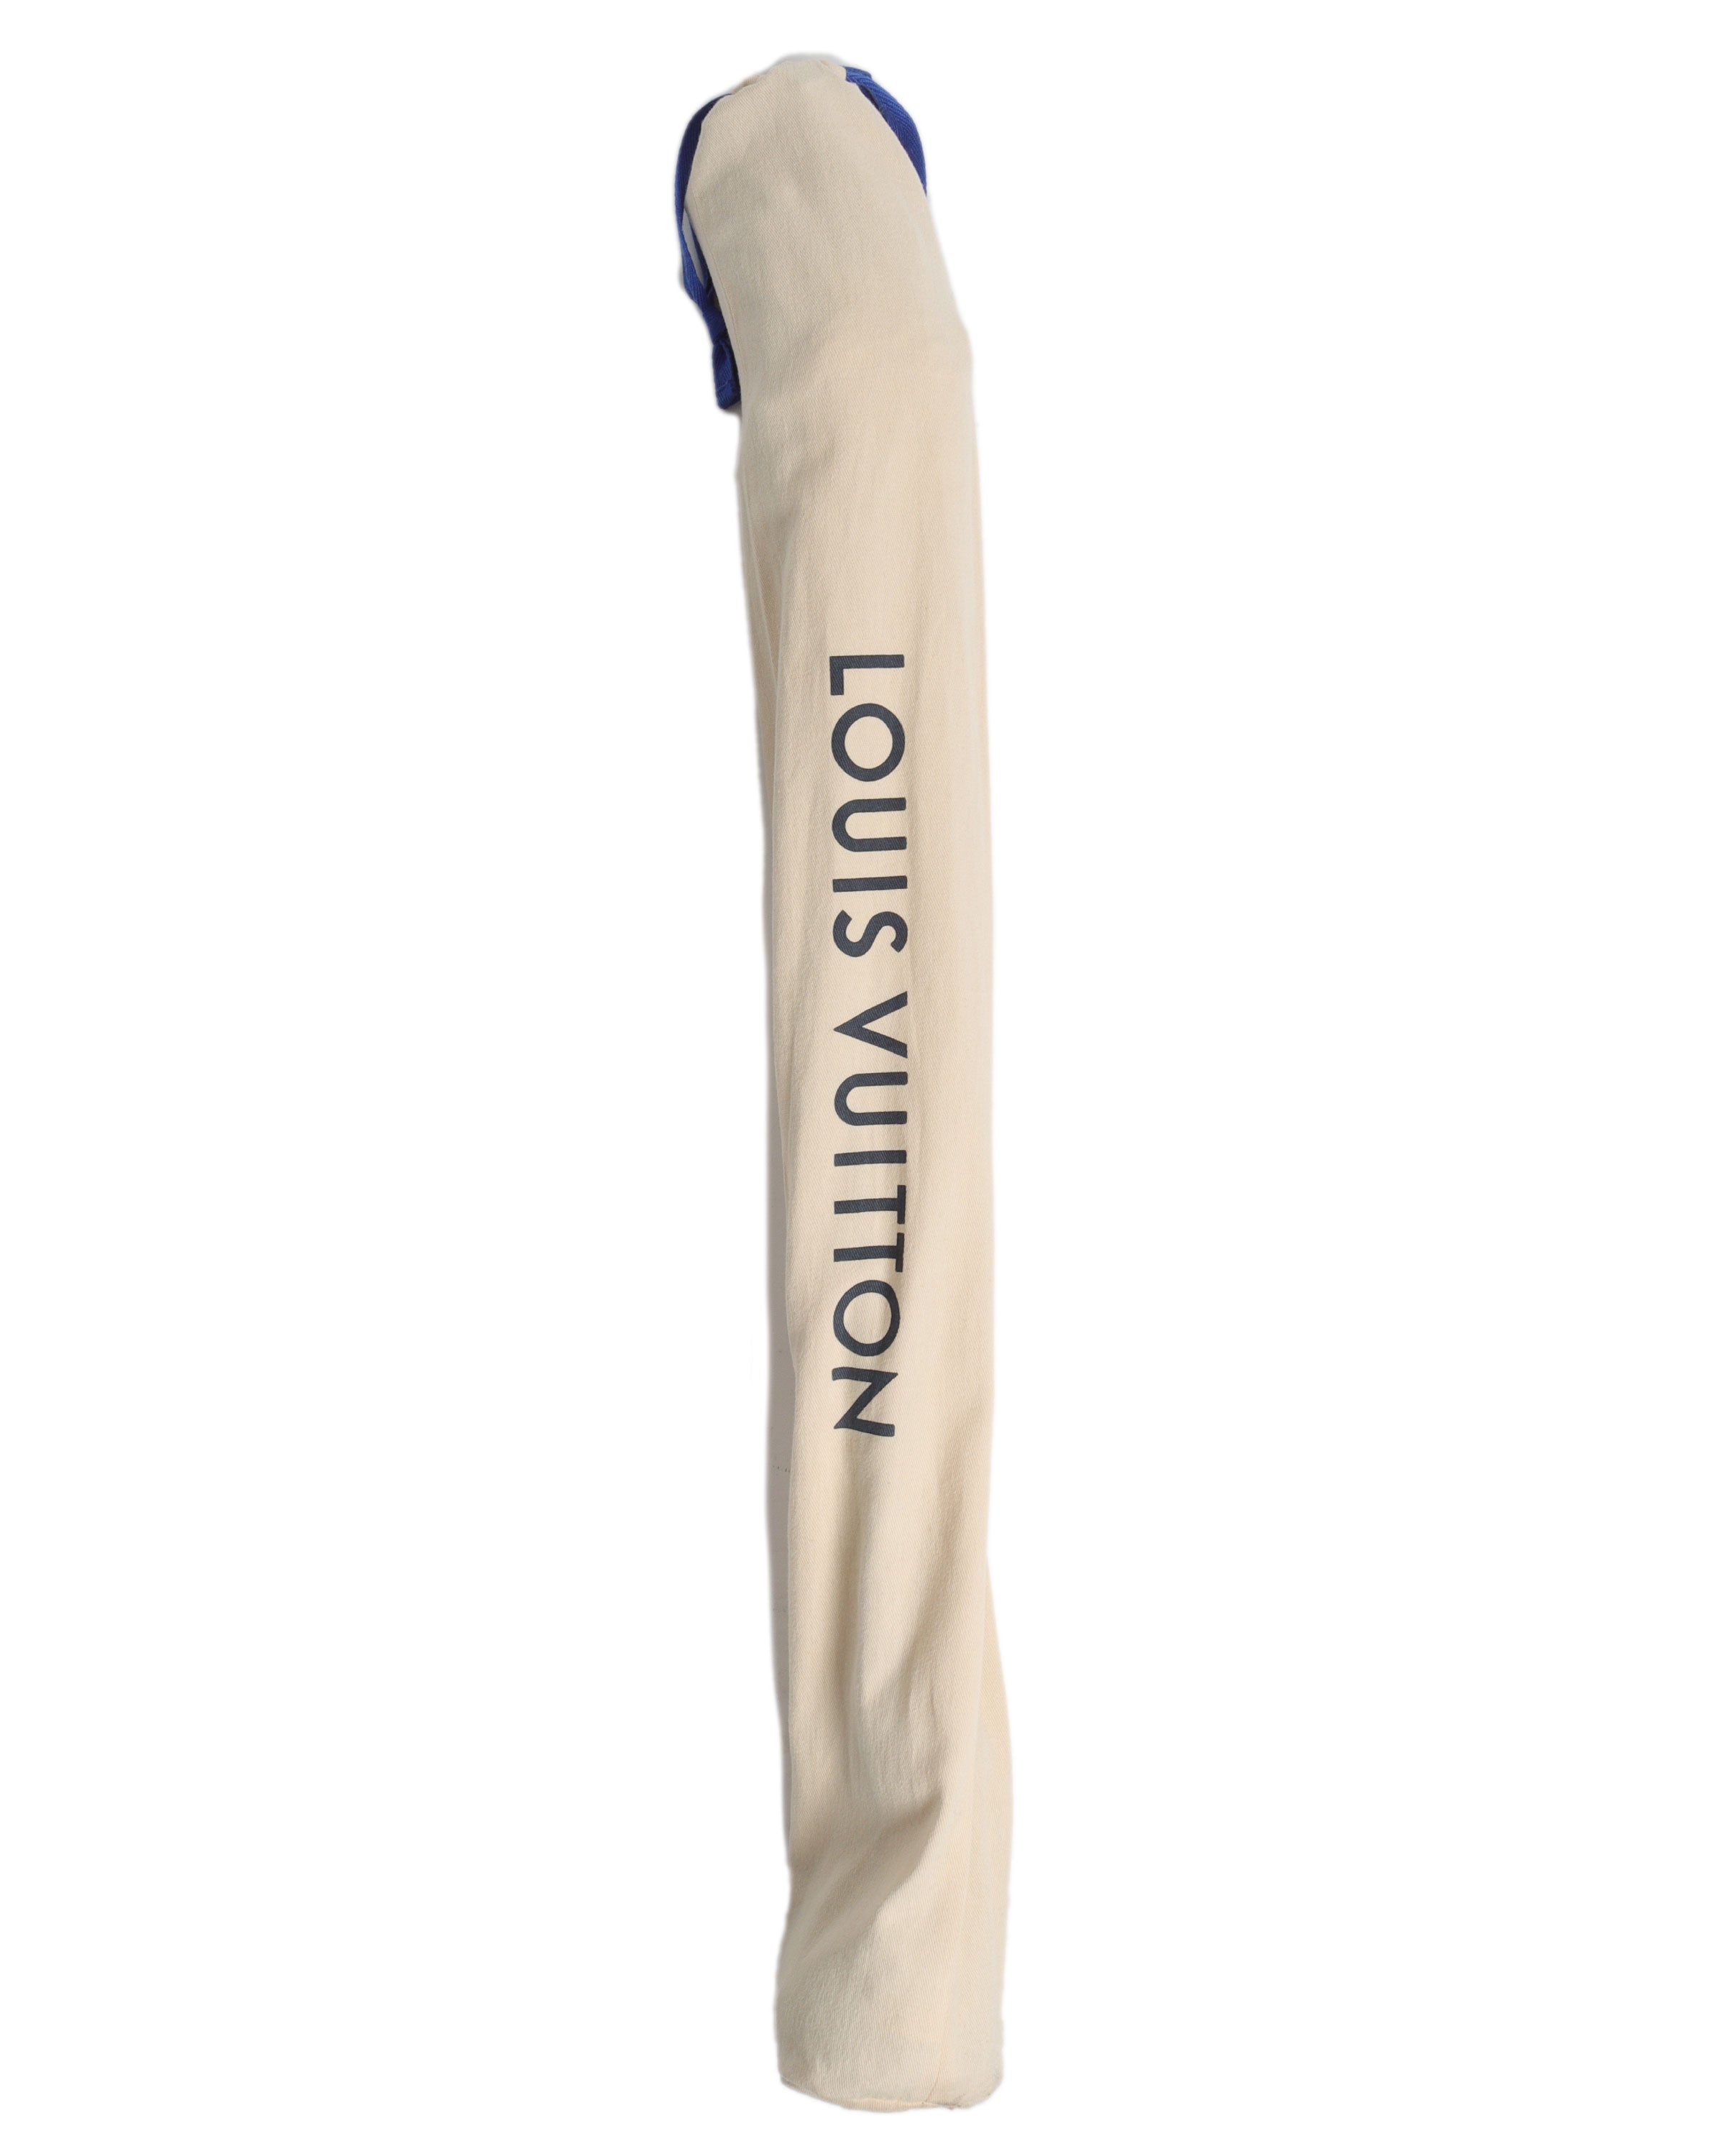 Louis Vuitton chausse les skis !